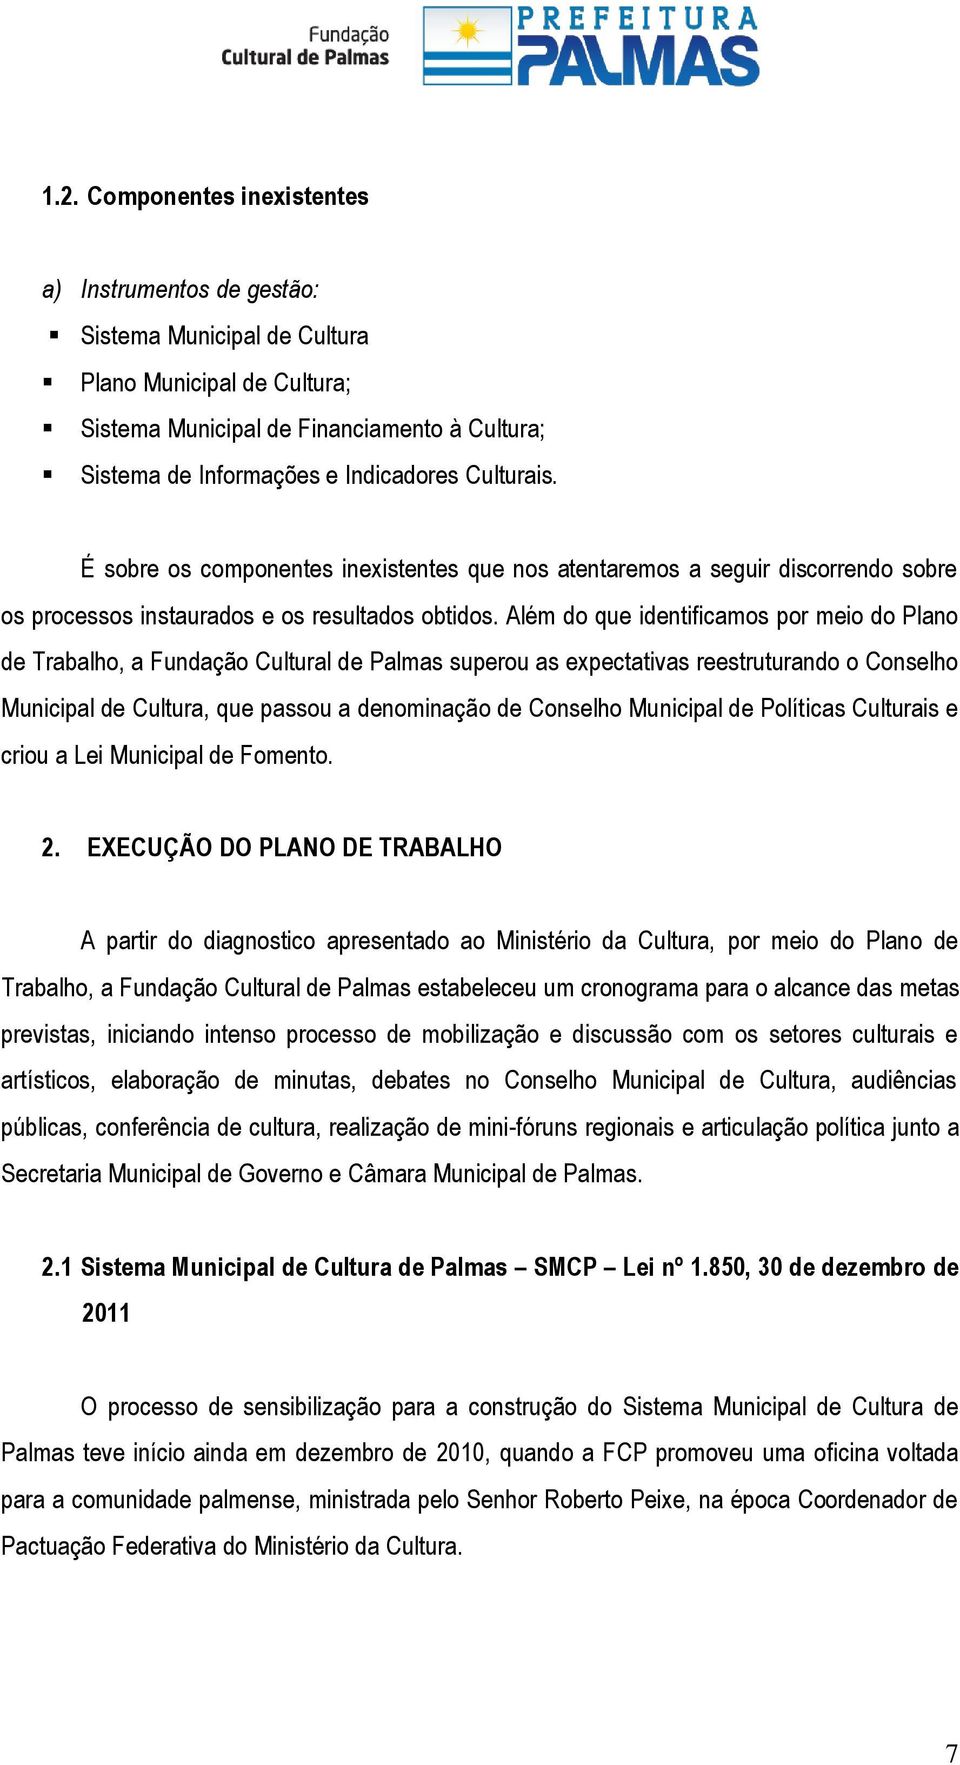 Além do que identificamos por meio do Plano de Trabalho, a Fundação Cultural de Palmas superou as expectativas reestruturando o Conselho Municipal de Cultura, que passou a denominação de Conselho